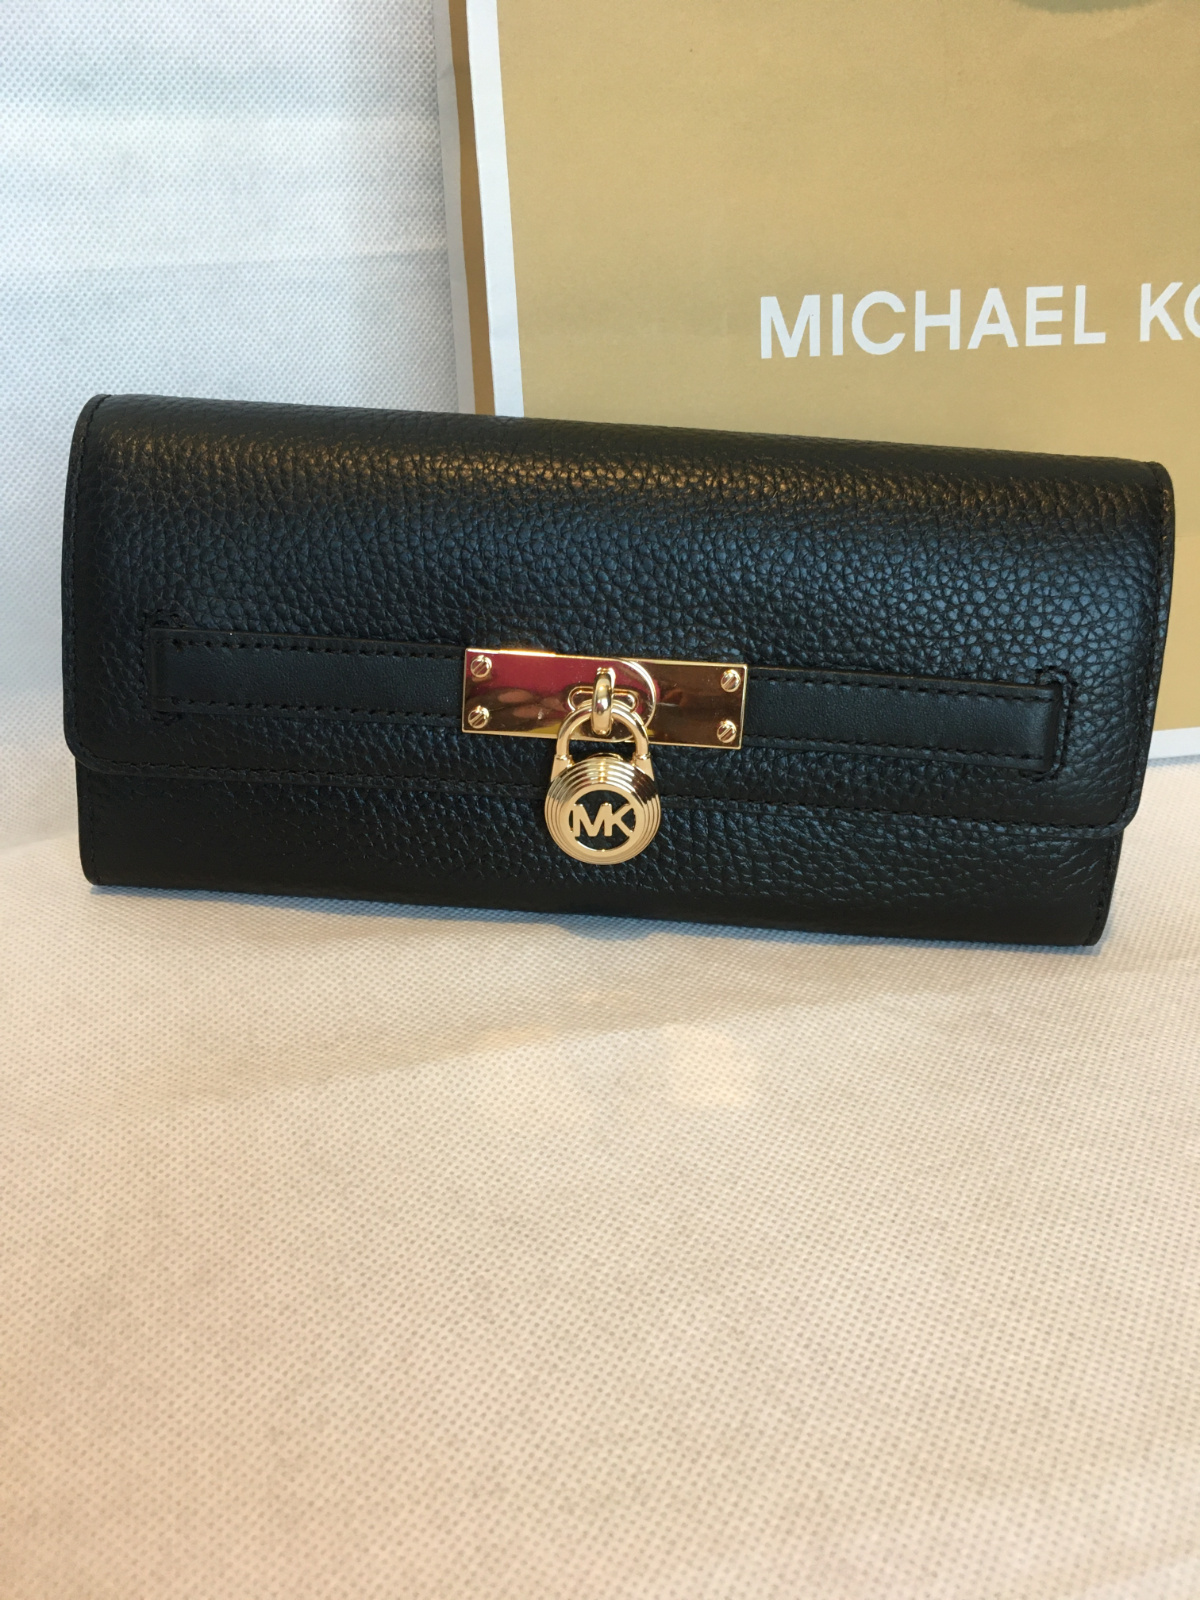 MK hamilton wallet black